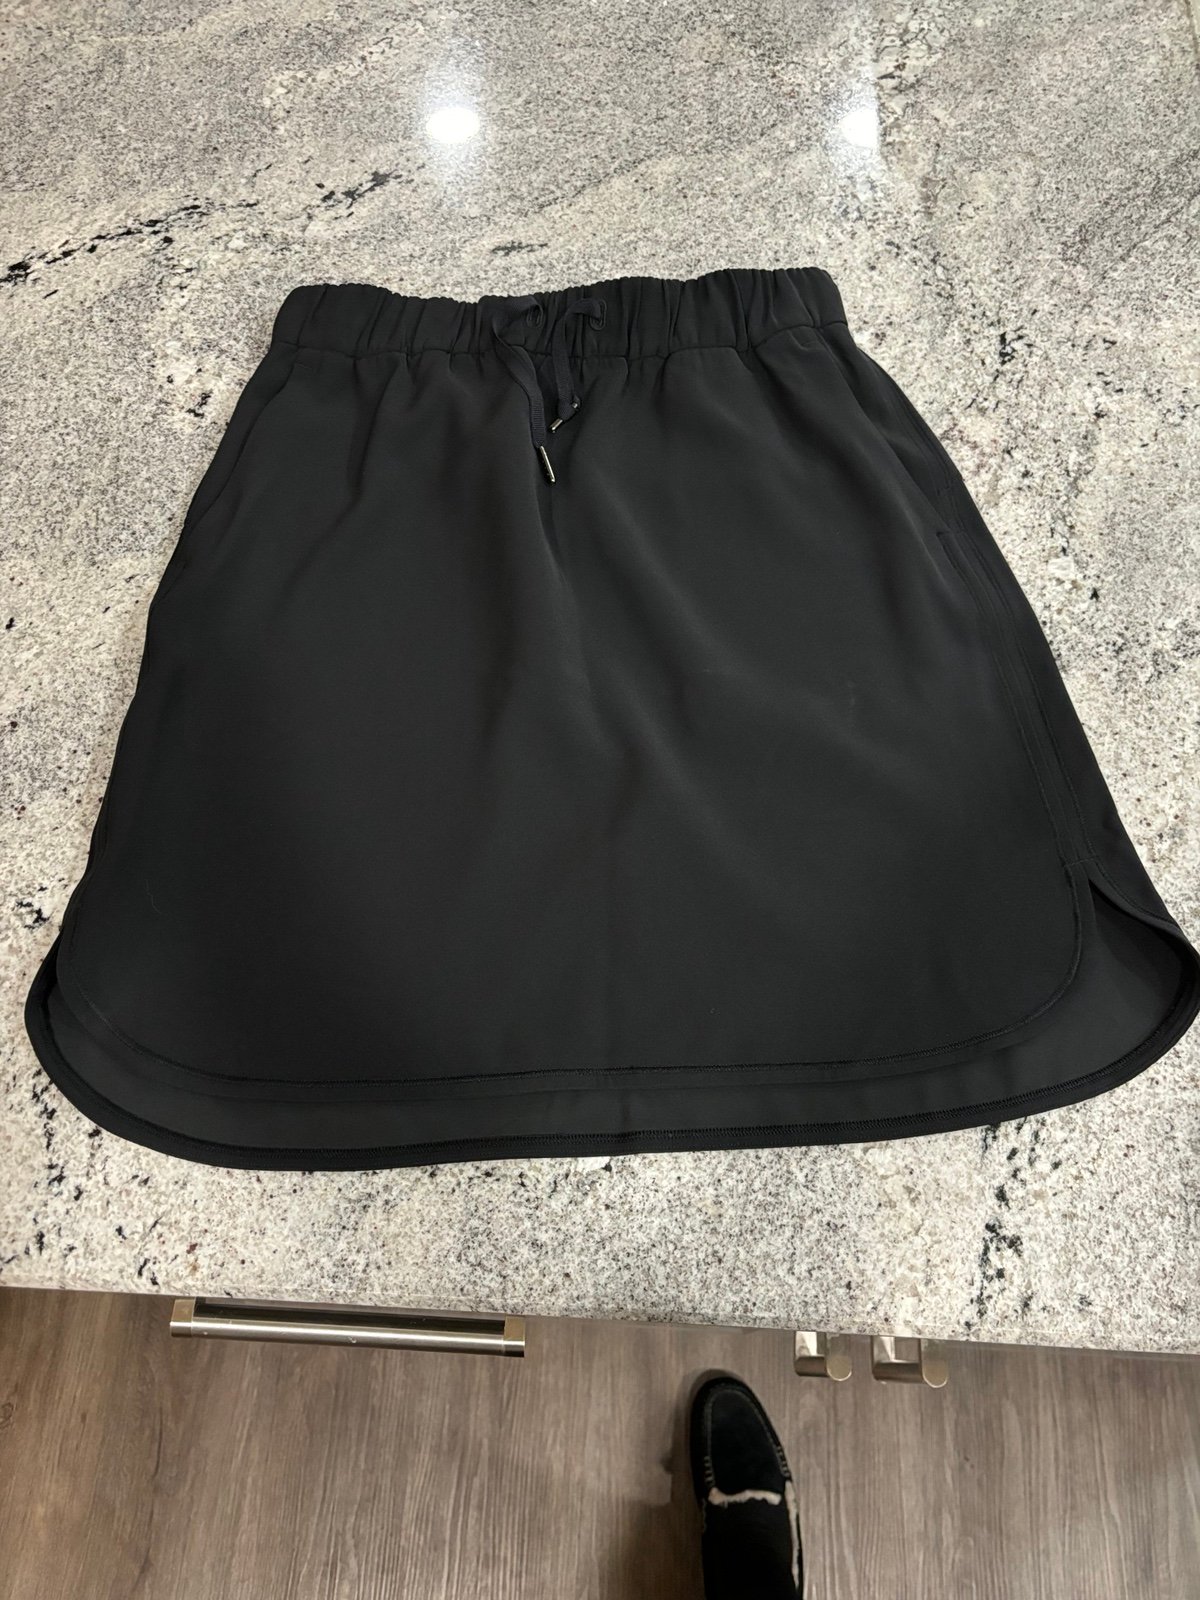 Simple Black Lululemon Skirt knee length 20” ipZiu2dzx 